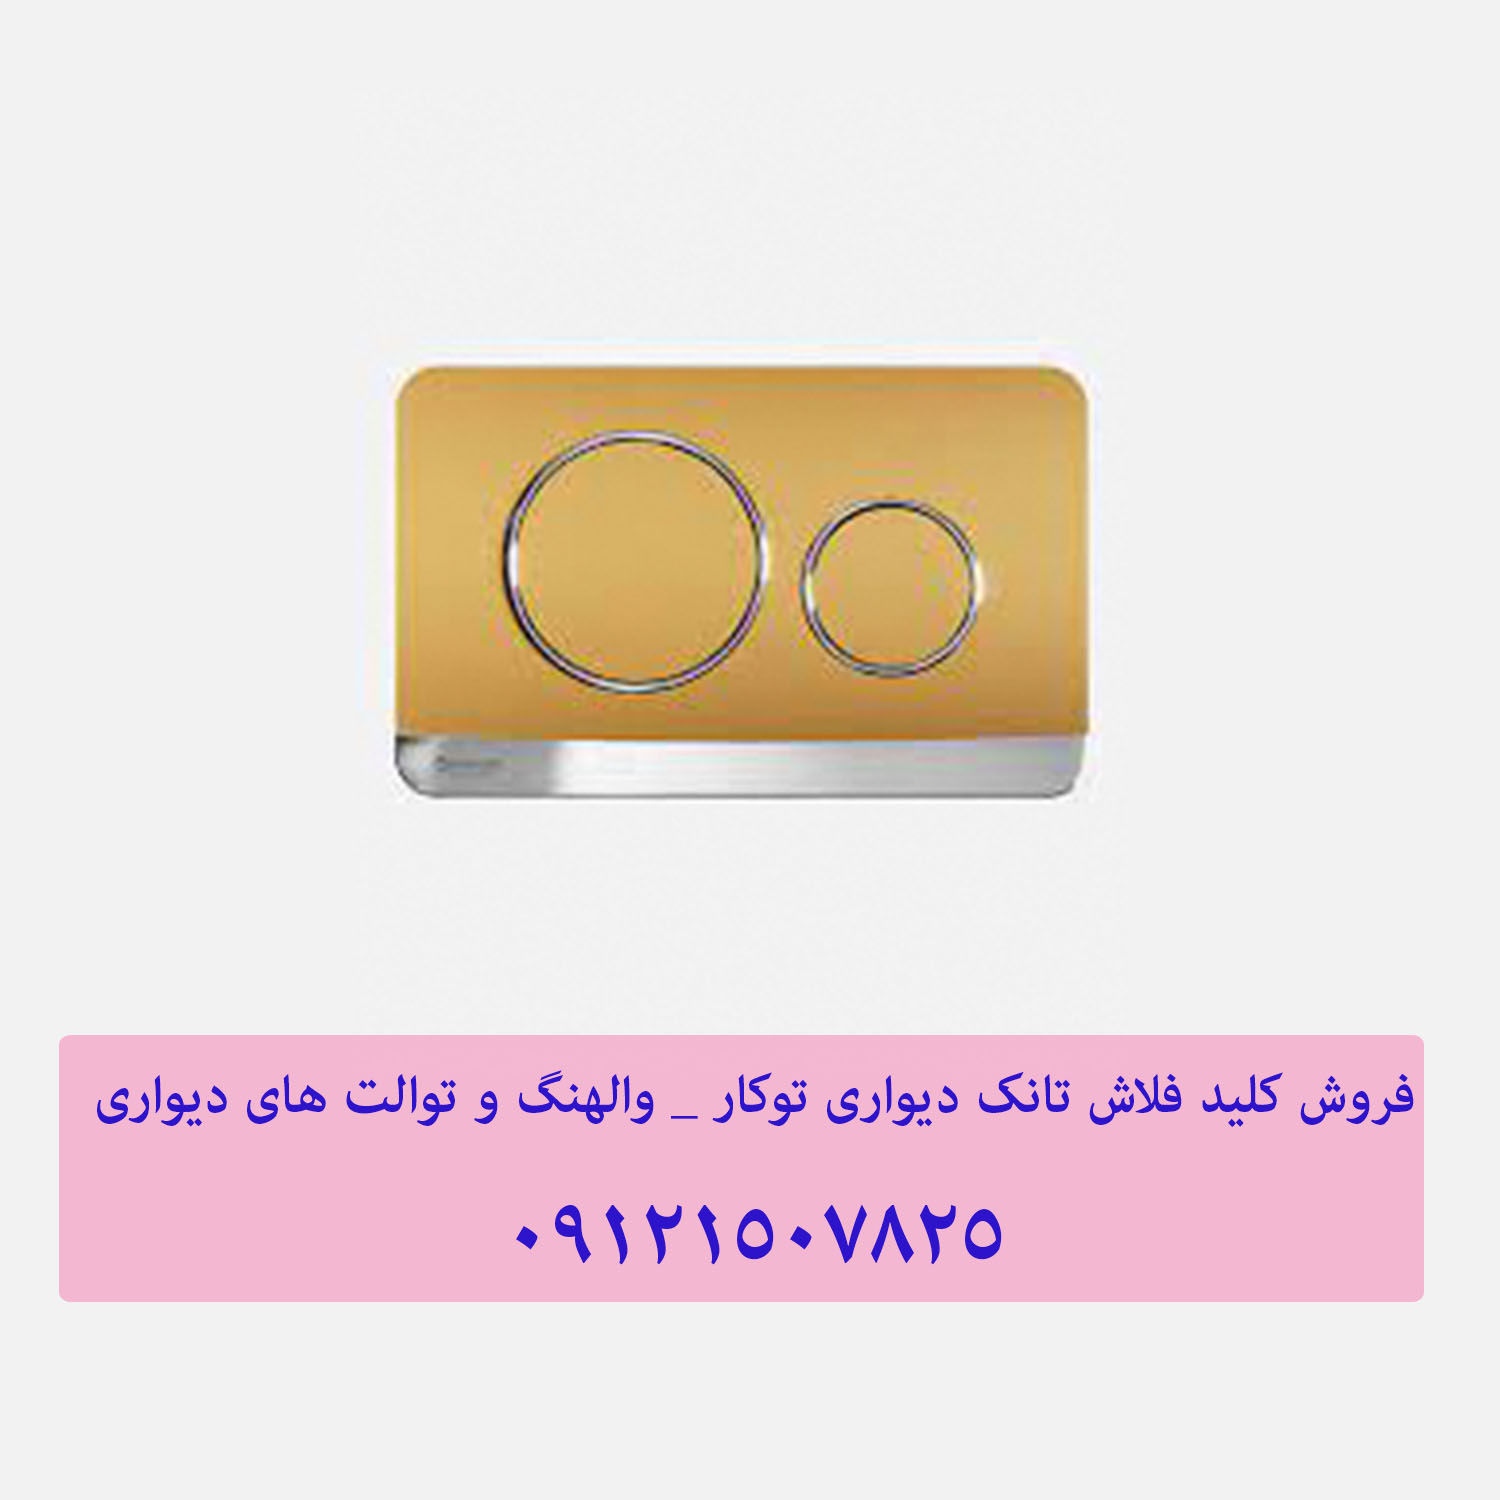 فروش کلید فلاش تانک دیواری توکار _ والهنگ و توالت های دیواری 22414950